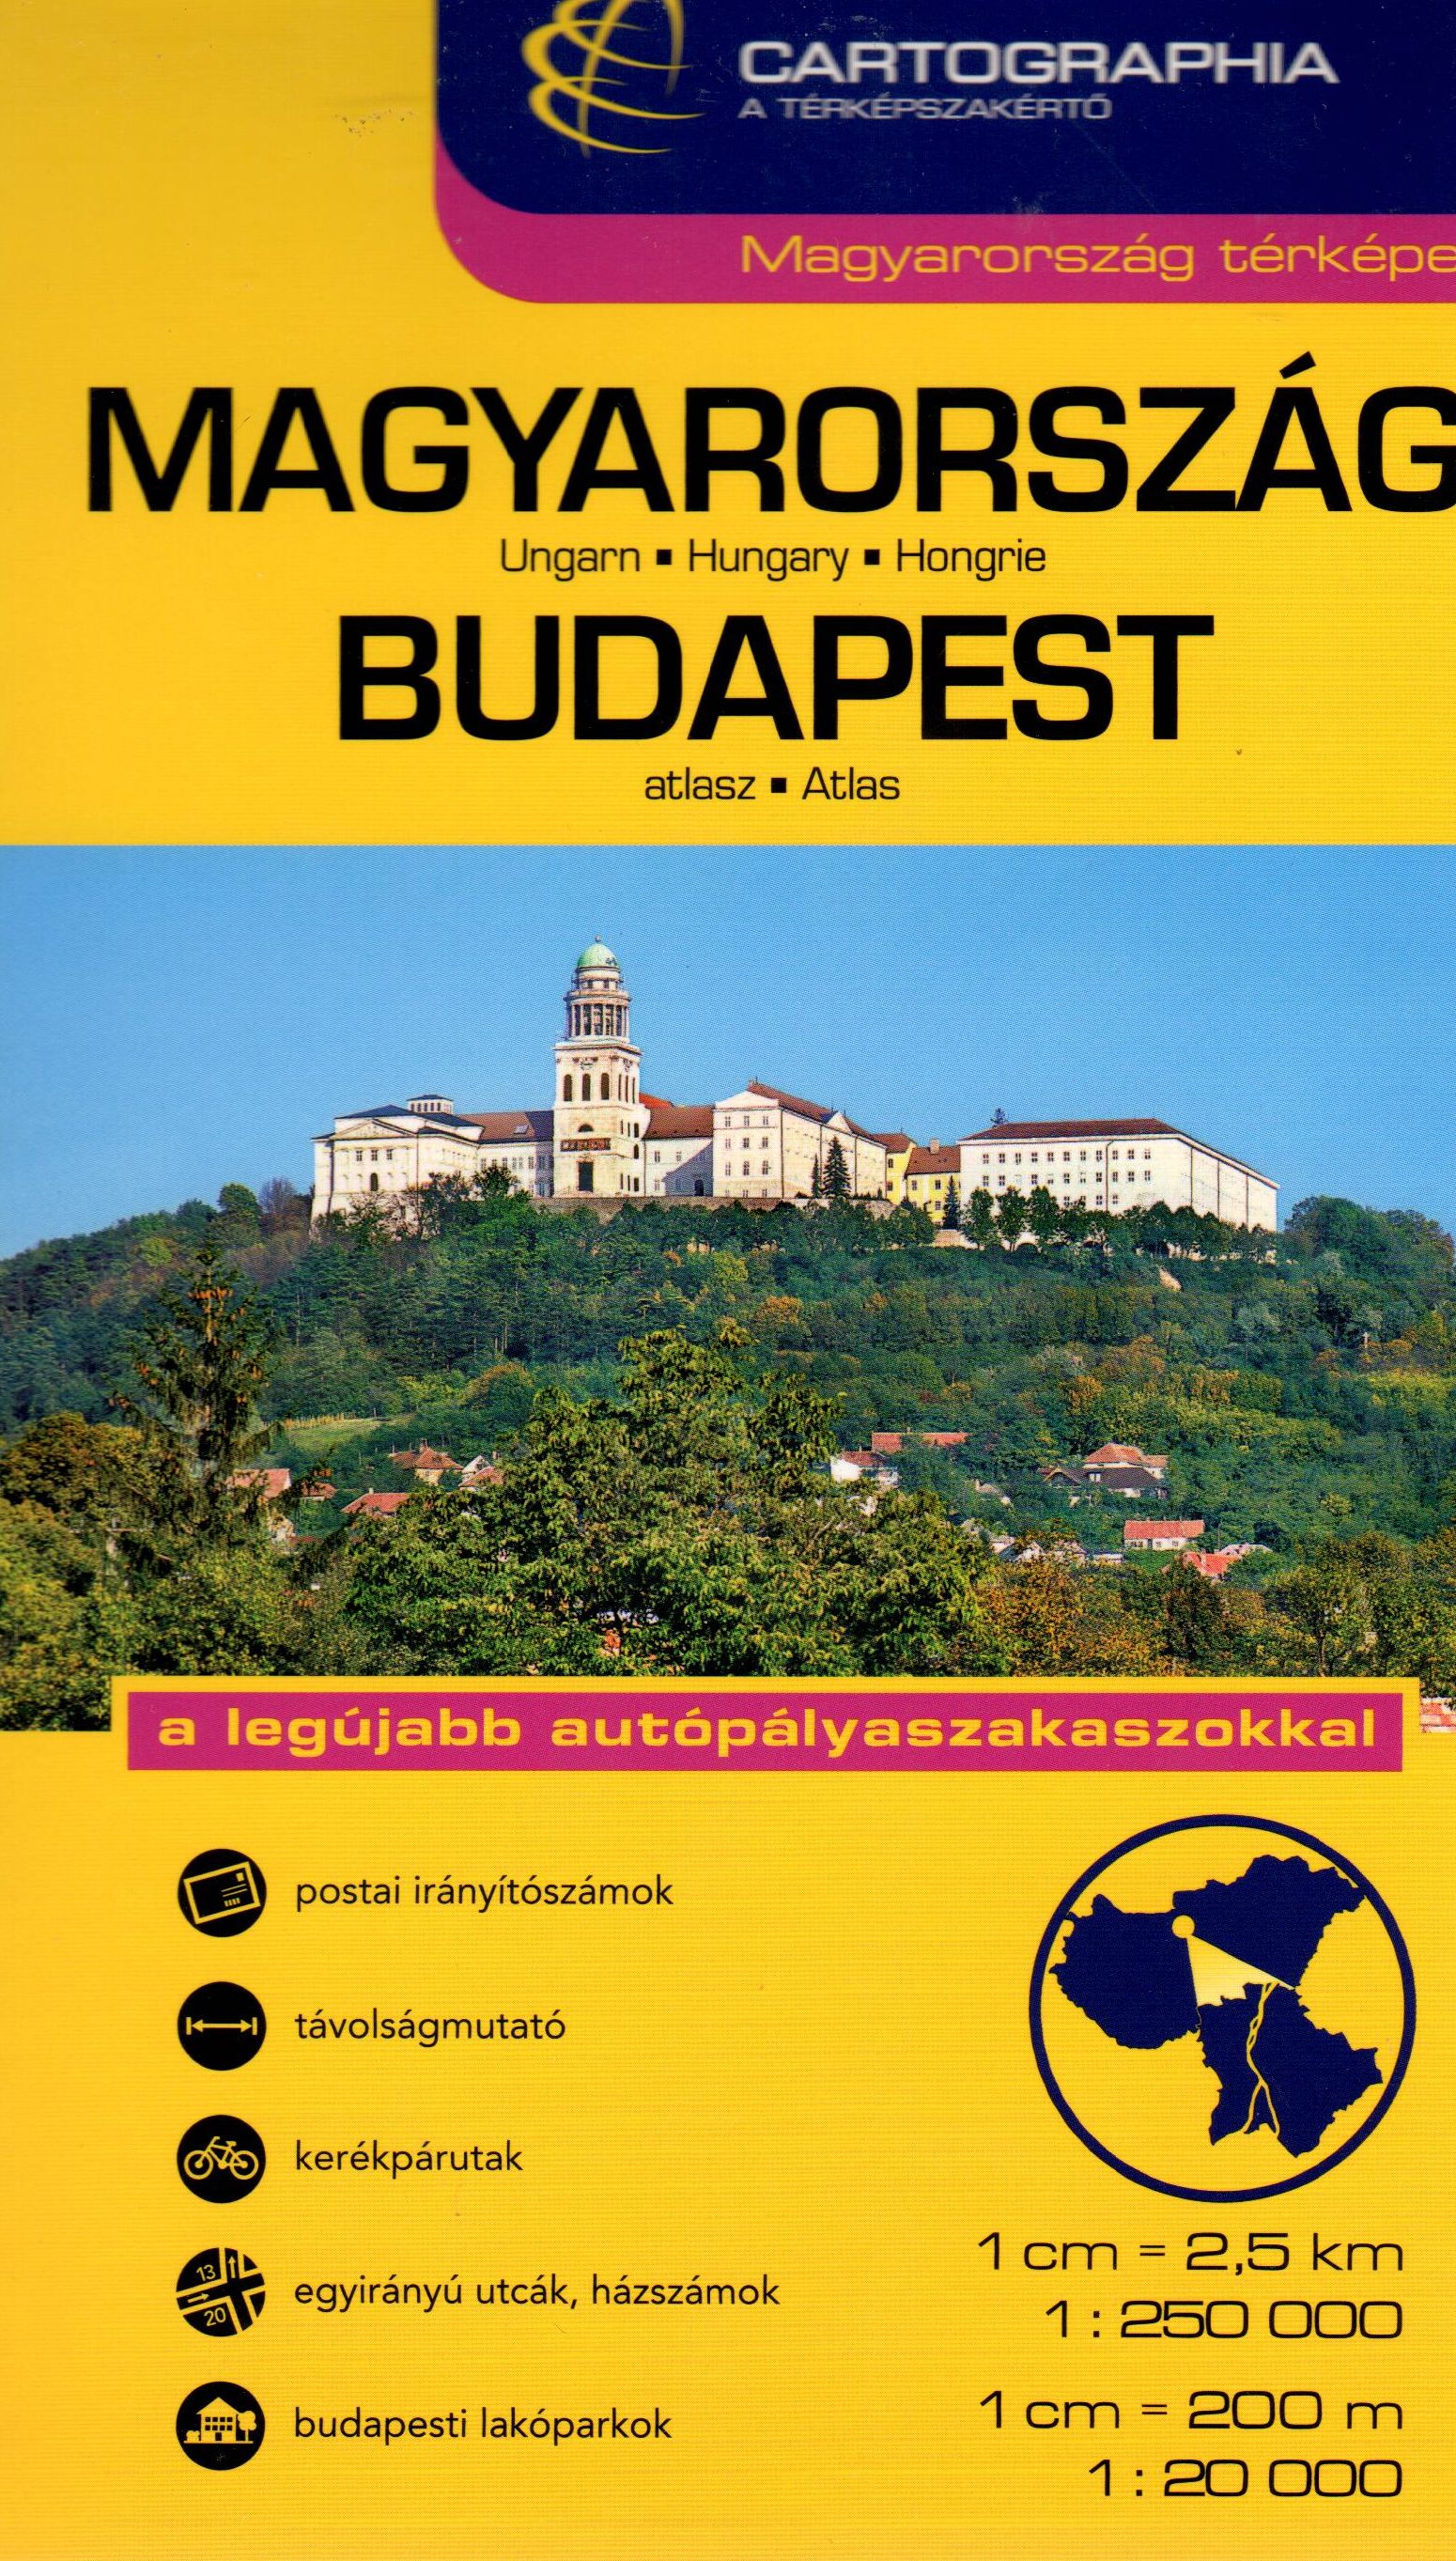  Két kiadvány egy kötetben: Magyarország autóatlasz 1.250.000 névmutatóval+ Budapest városatlasz 1:20.000 utcajegyzékkel.